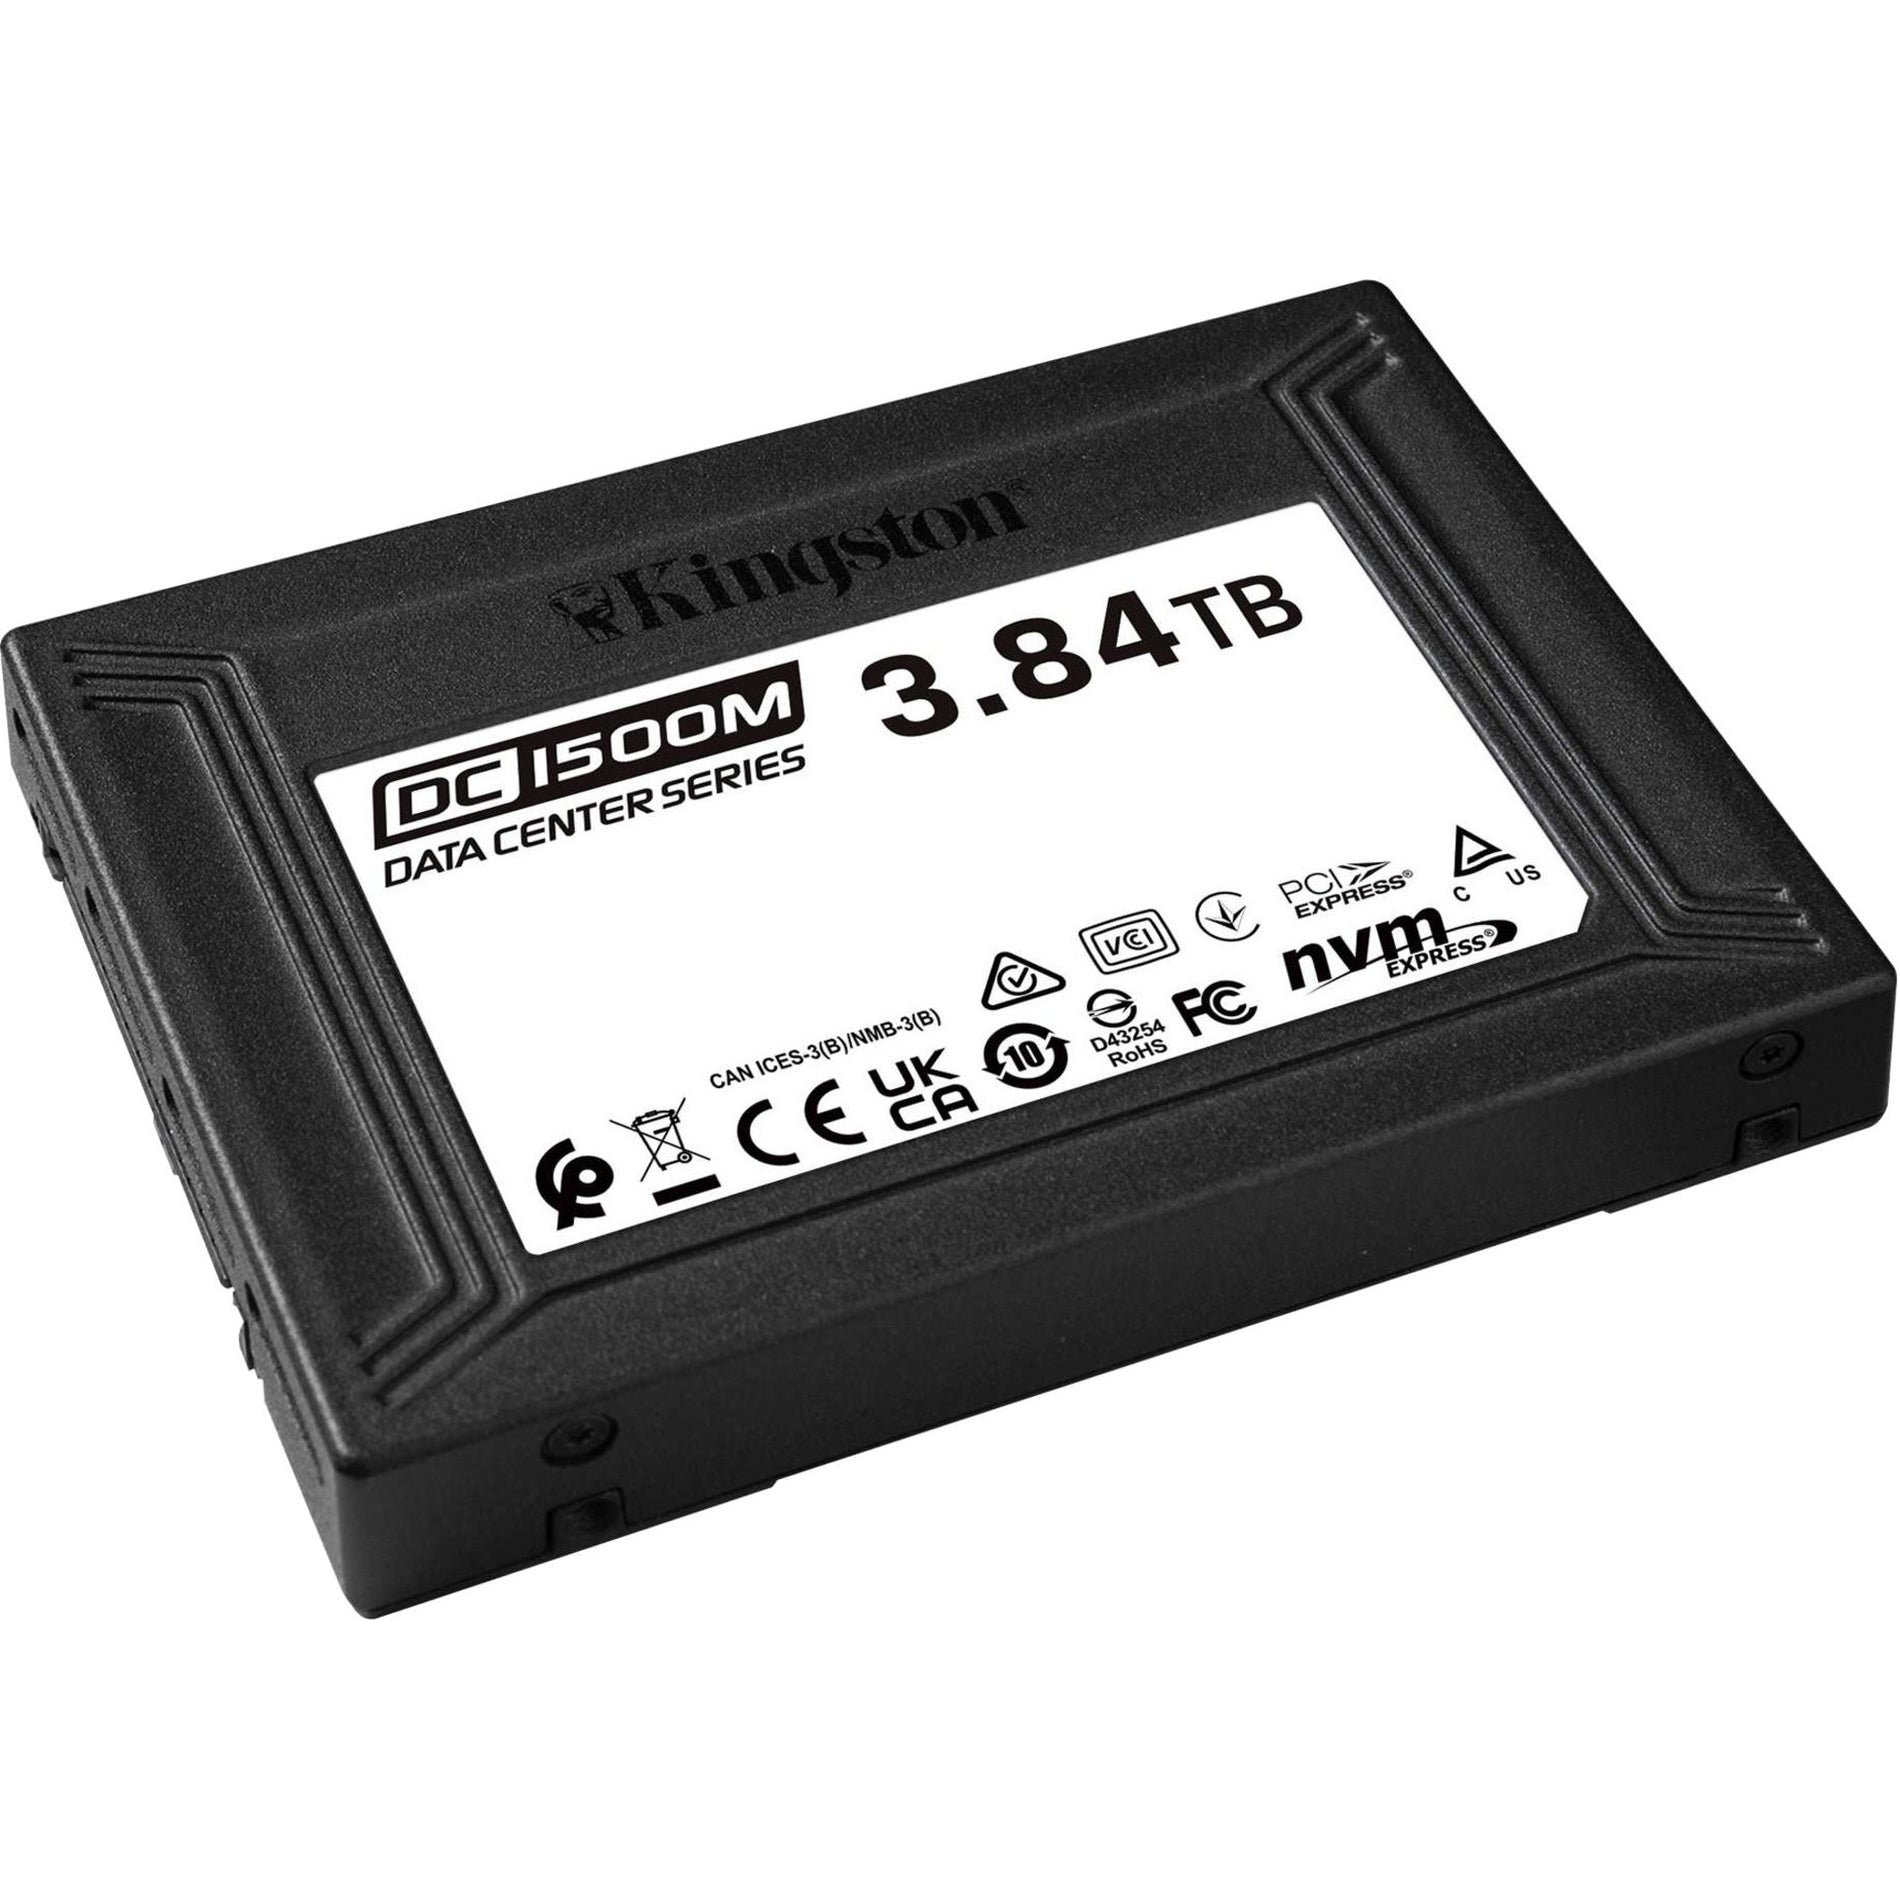 Kingston SEDC1500M/3840G DC1500M U.2 Enterprise SSD, 3.84 TB, PCIe NVMe, 5 Year Warranty